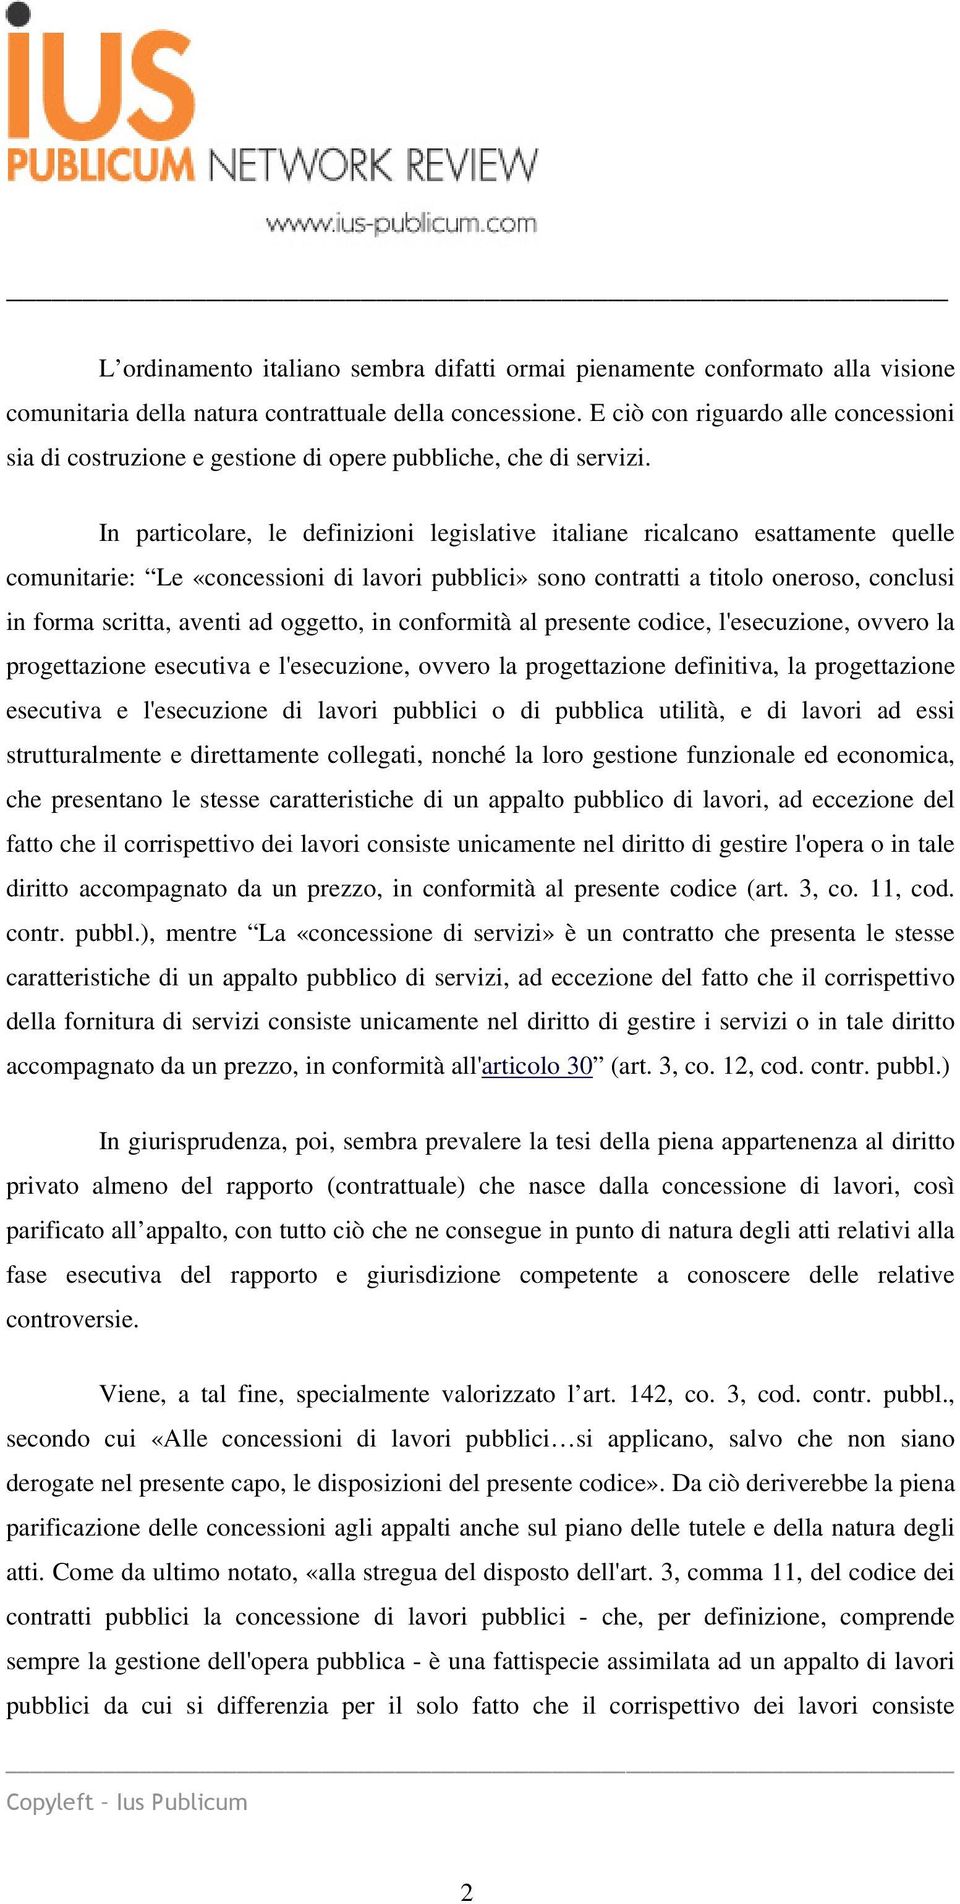 In particolare, le definizioni legislative italiane ricalcano esattamente quelle comunitarie: Le «concessioni di lavori pubblici» sono contratti a titolo oneroso, conclusi in forma scritta, aventi ad